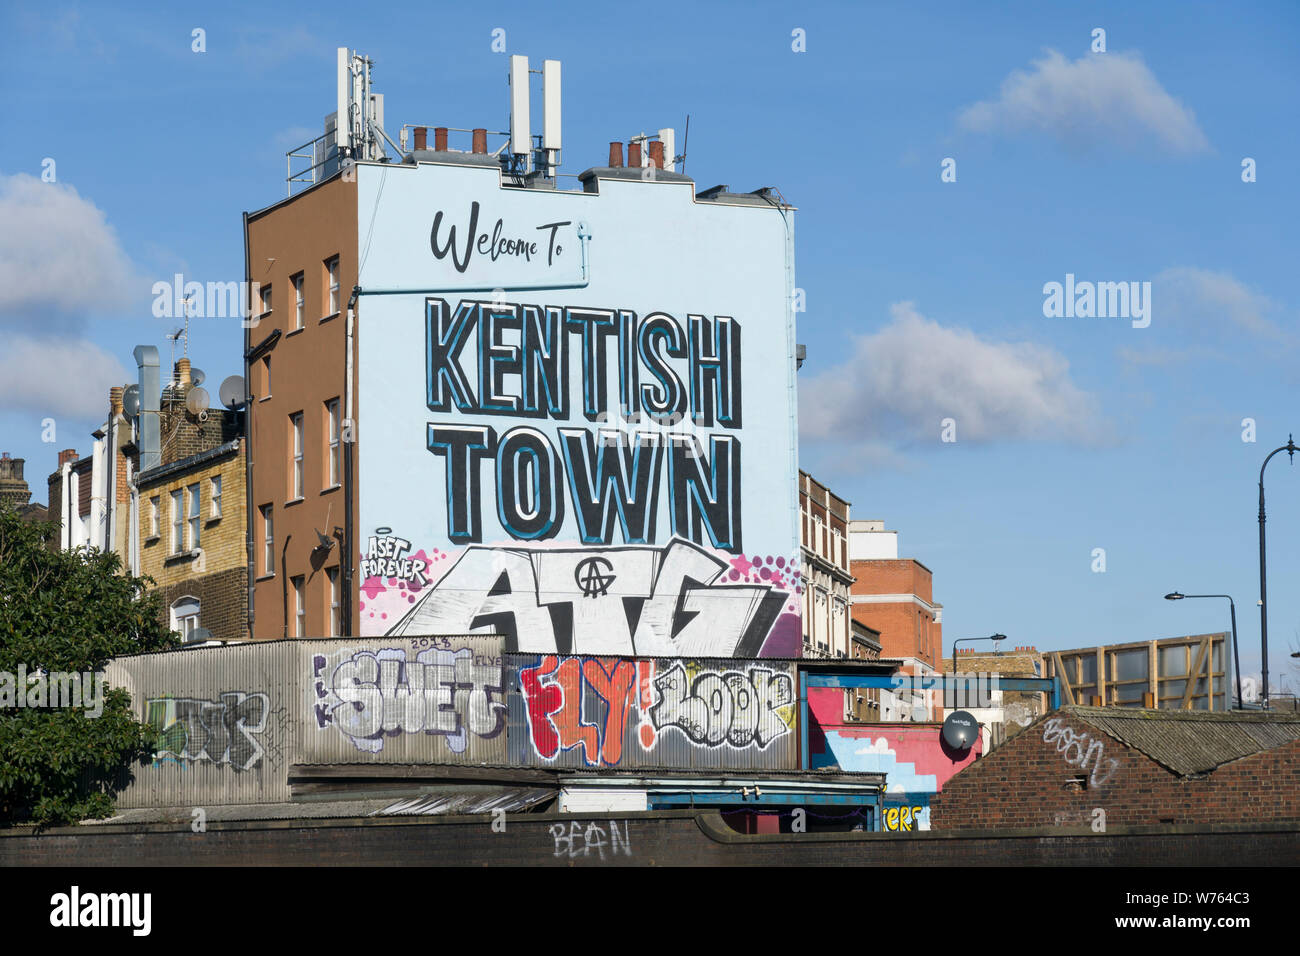 Kentish Town sign, Kentish Town, London, Britain. Stock Photo